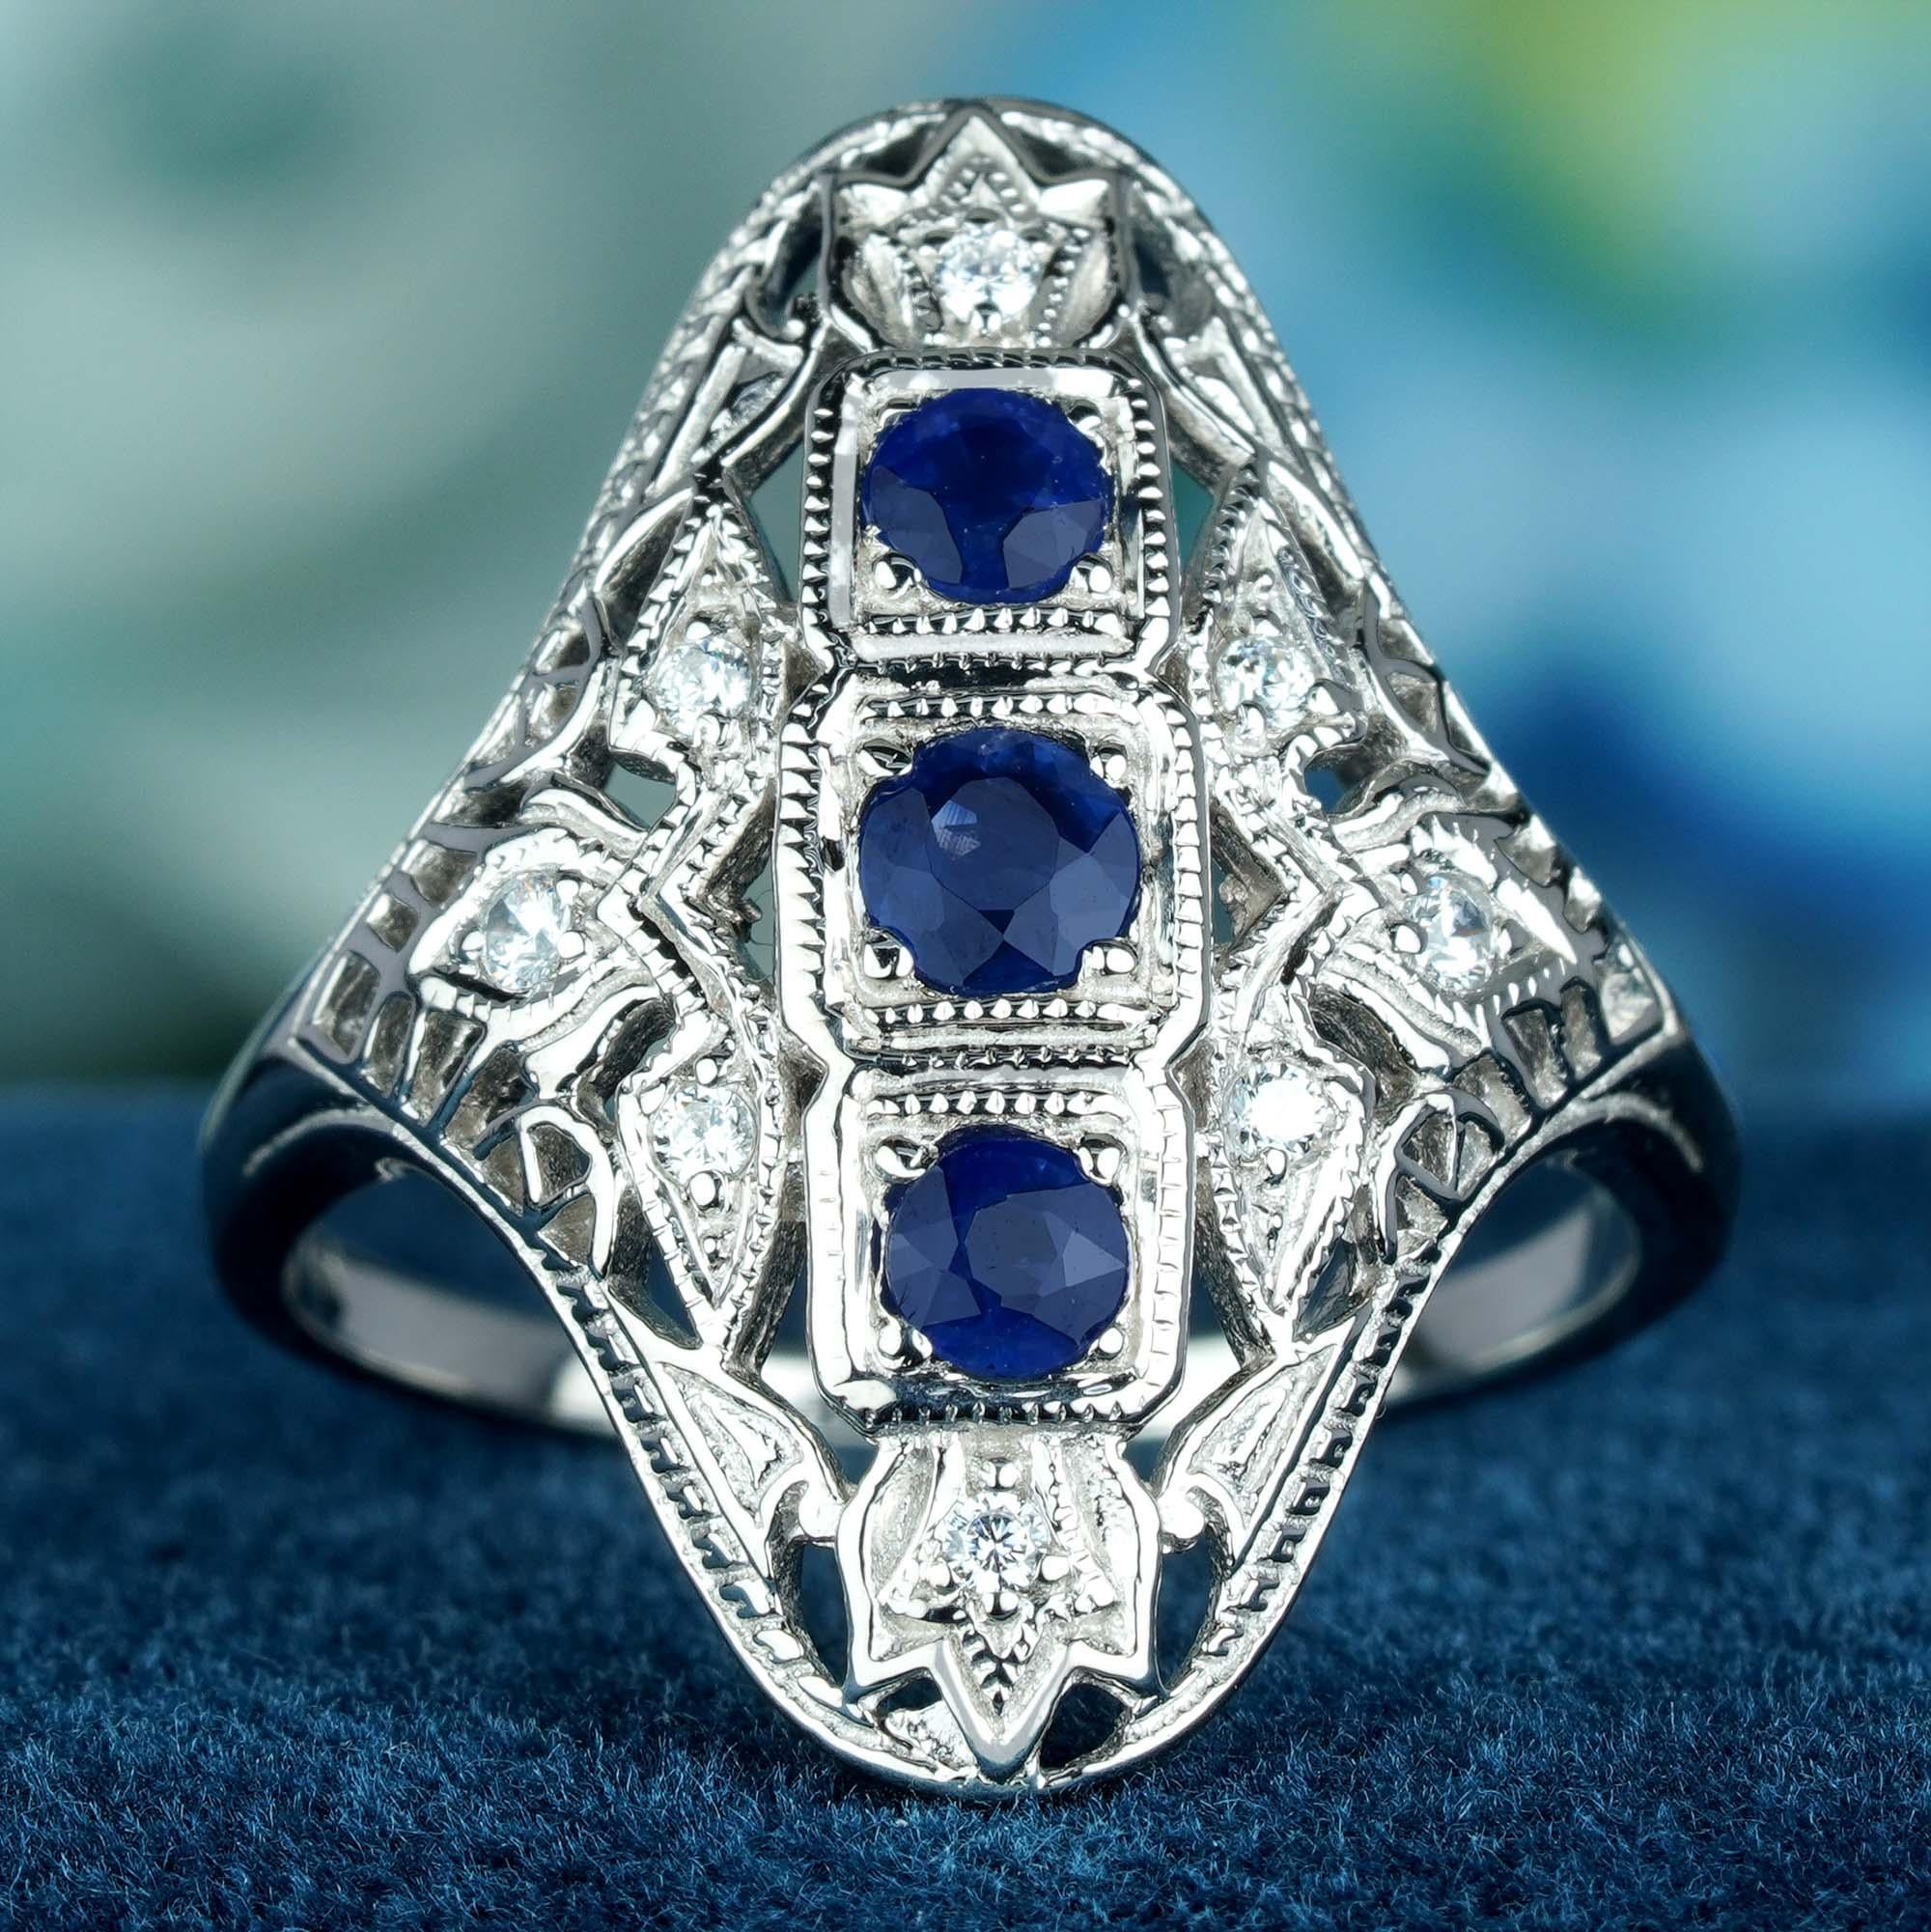 Dieser Ring im Art-déco-Stil zeigt in der Mitte 3 kaskadenförmig angeordnete runde blaue Saphire, die in einer erhöhten Lünette gefasst sind. Zarte Filigranarbeiten schmücken das massive Weißgoldband und die Schultern und verleihen dem Ring einen